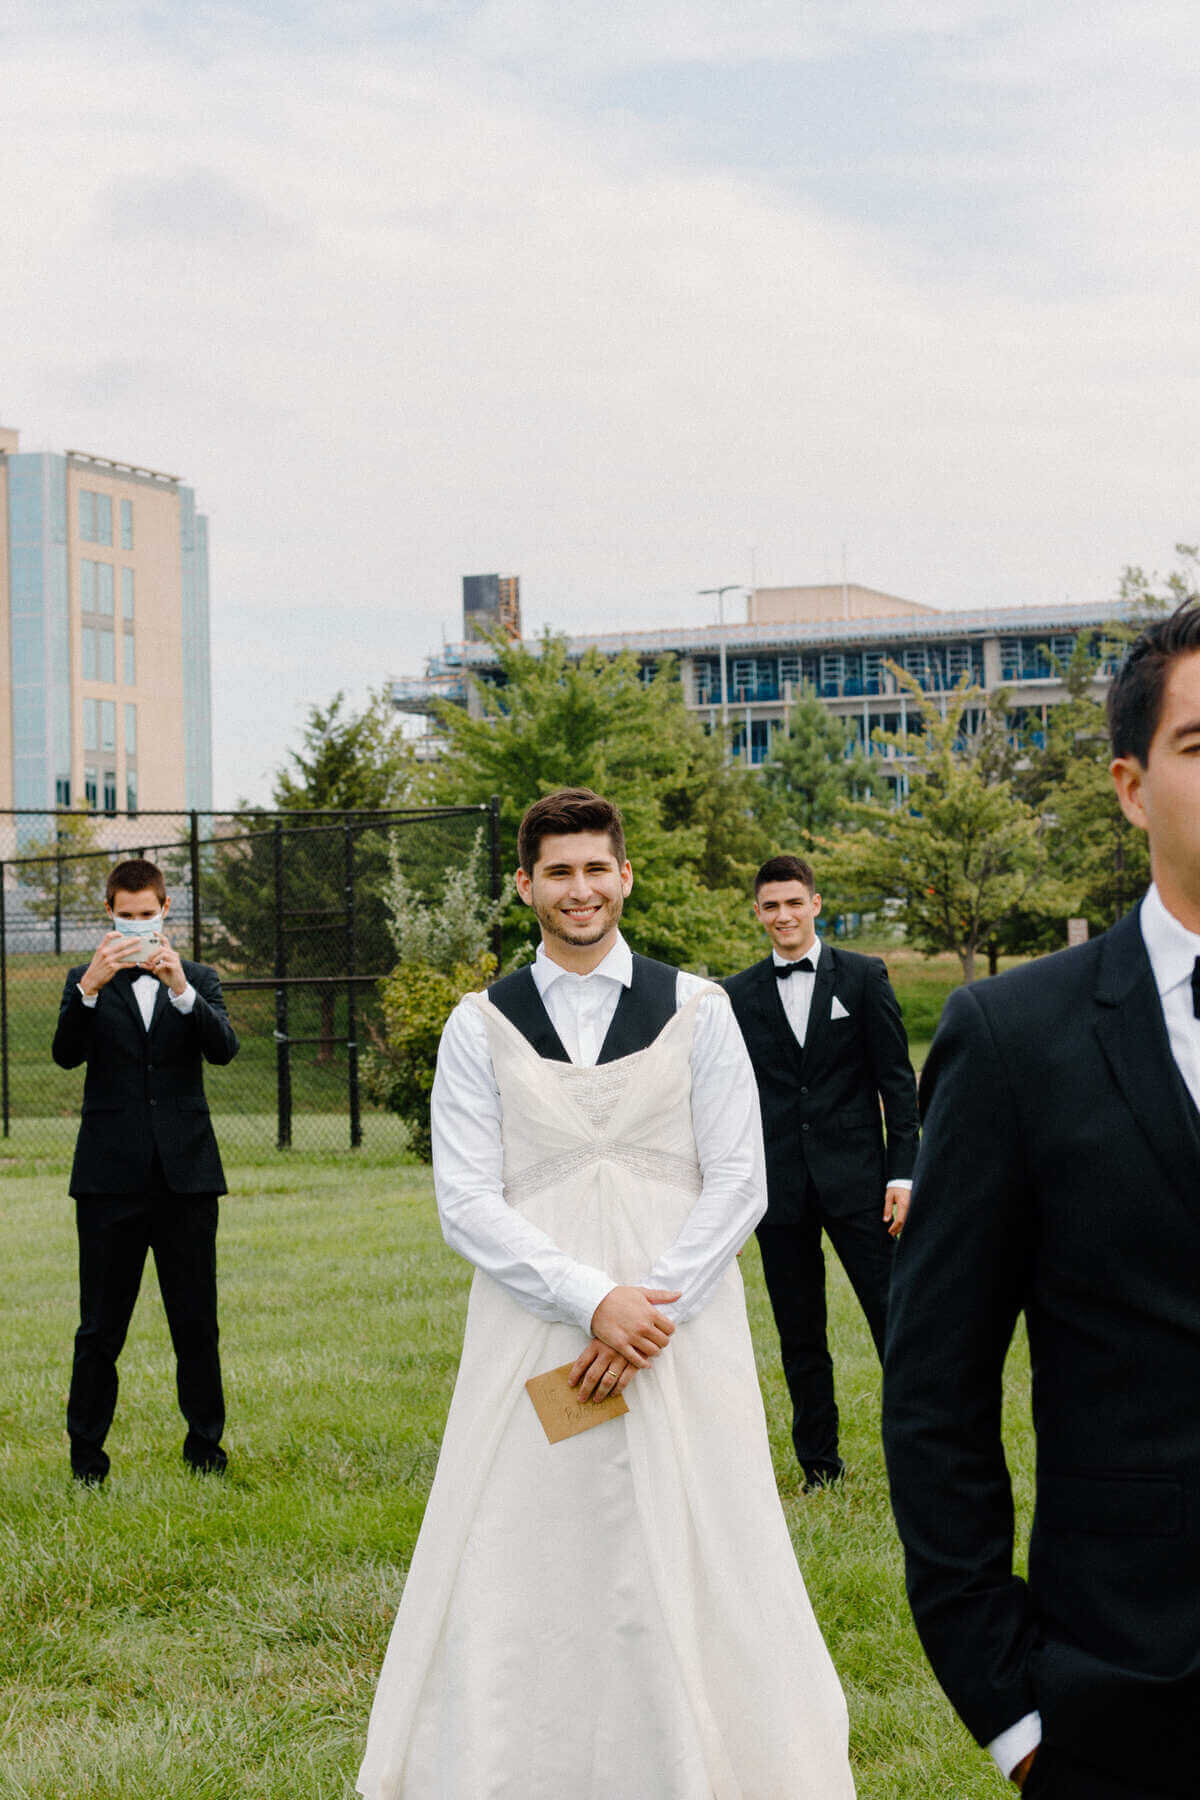 6-kara-loryn-photography-groomsmen-surprising-groom-with-first-look